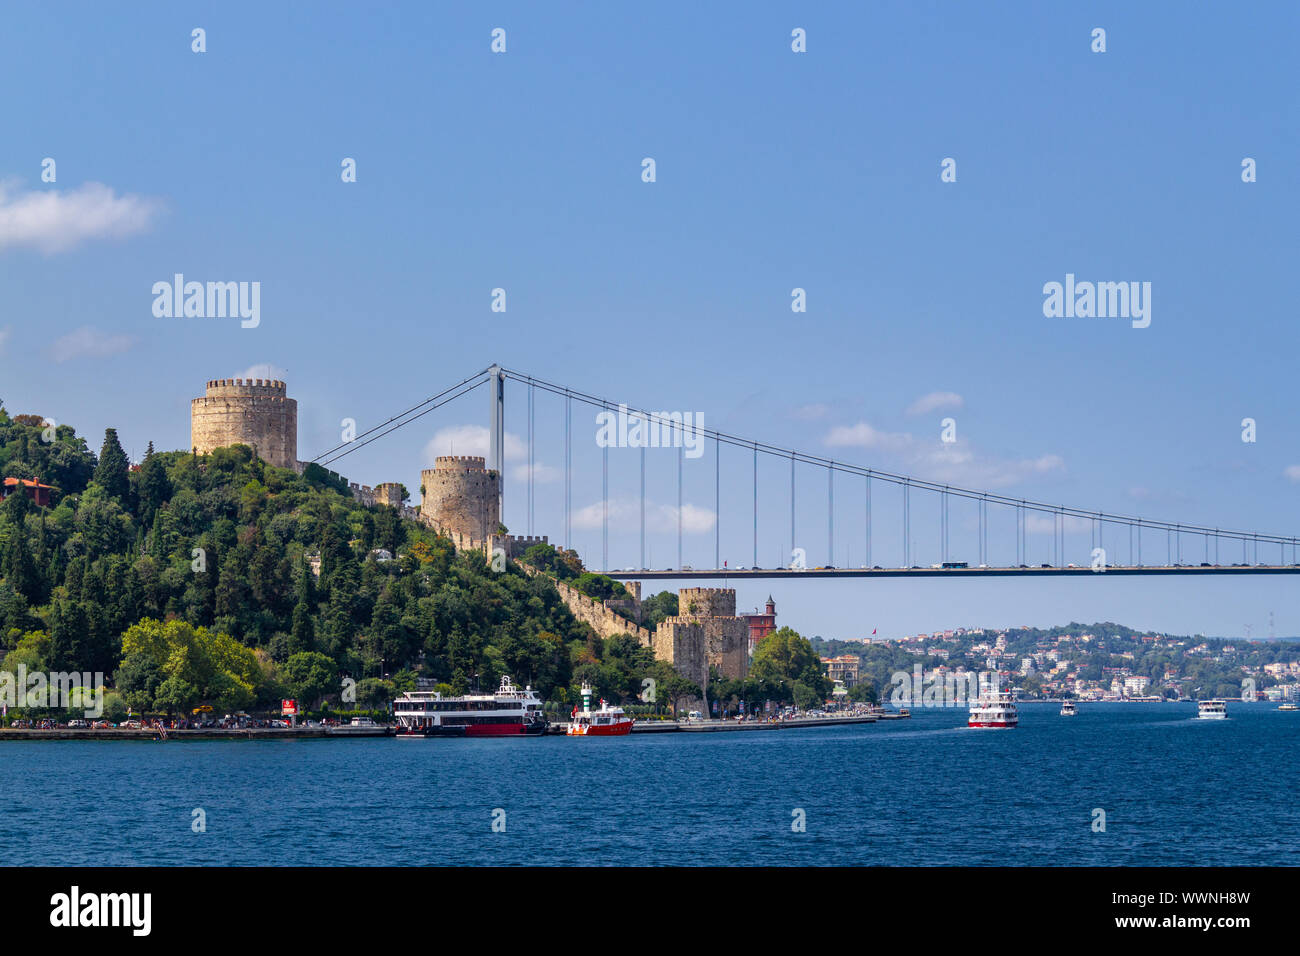 Istanbul und den Bosporus Rumelihisari Festung Landschaft Ansicht vom Meer in sonniger Tag Stockfoto